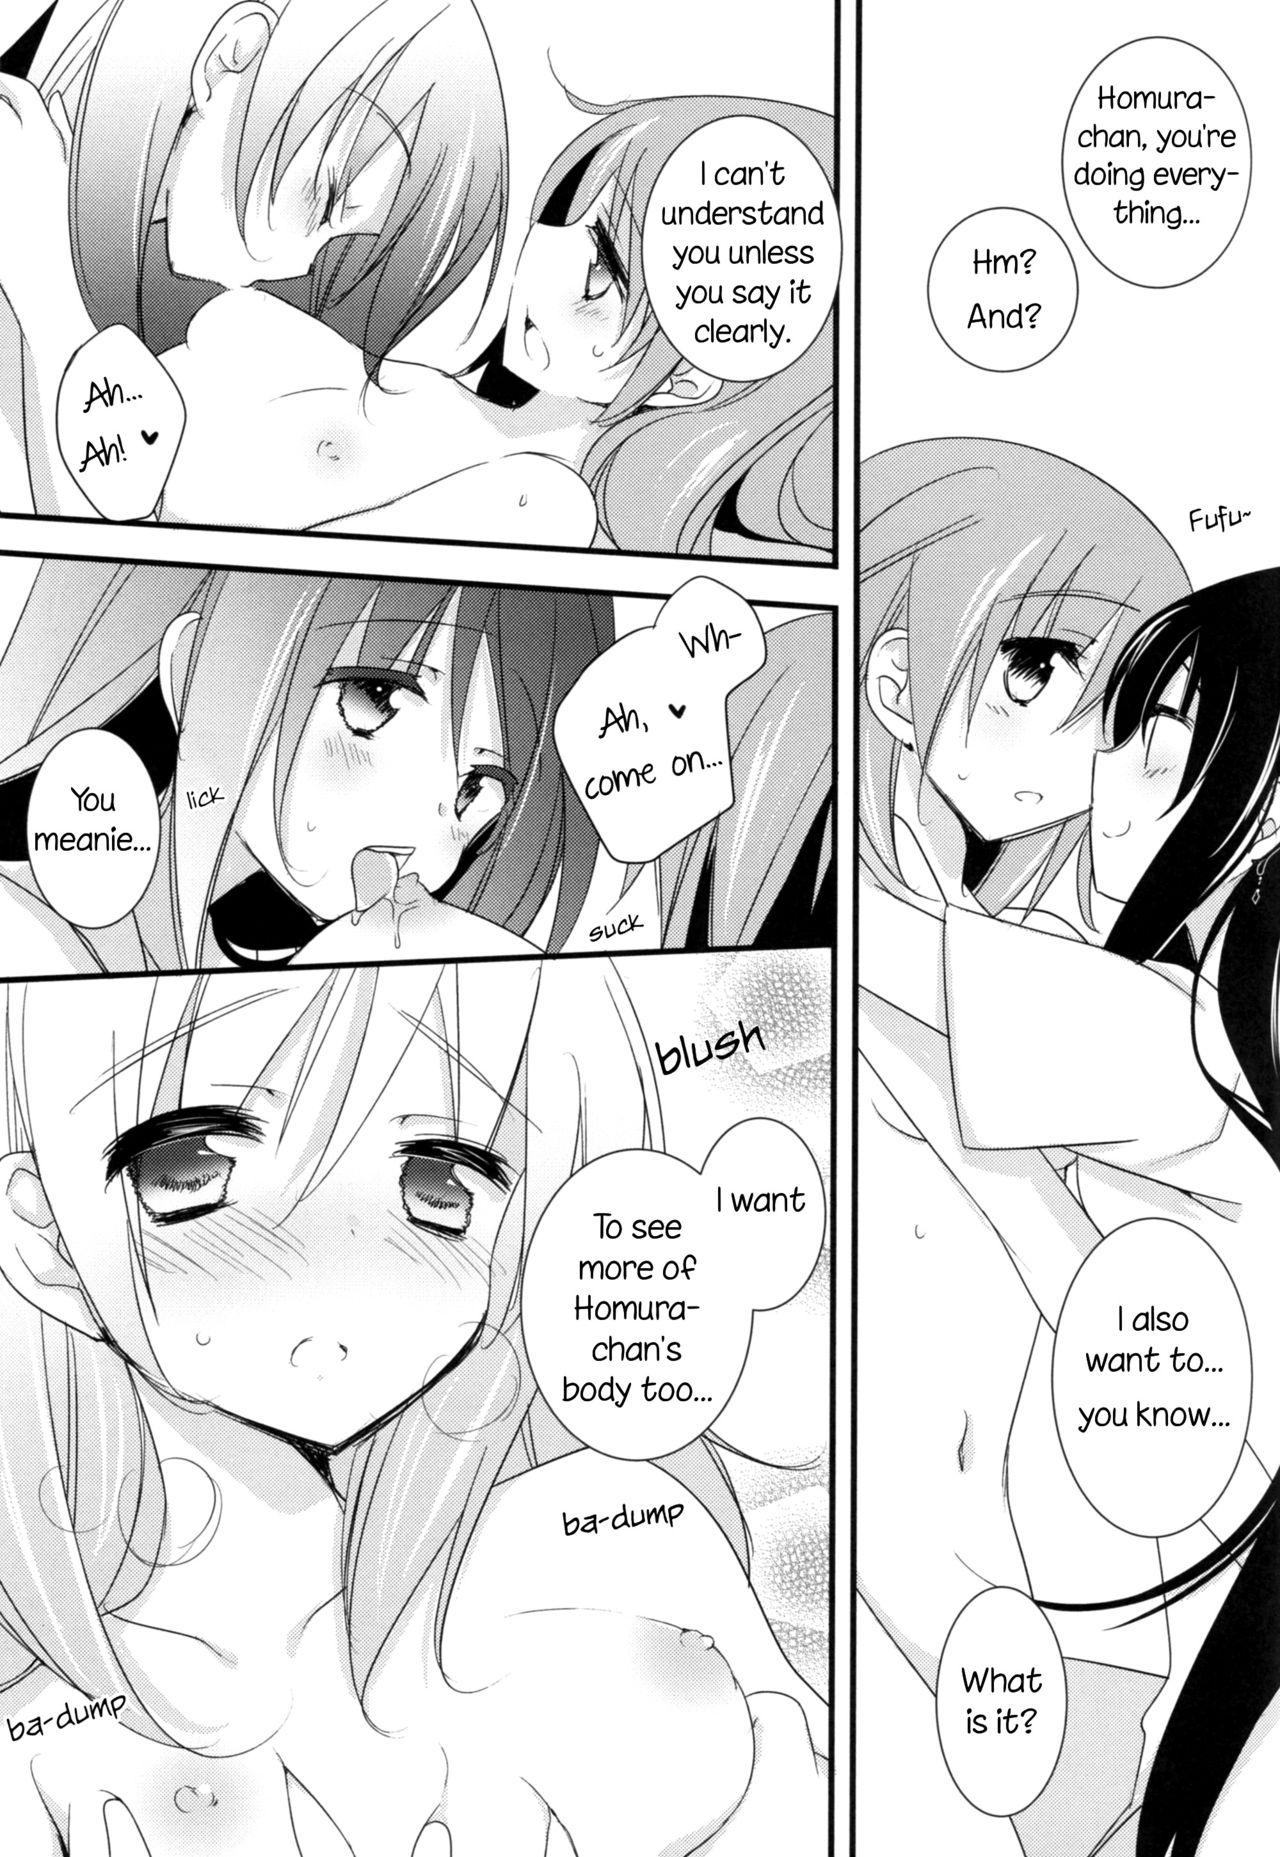 Amature Porn Watashi no Kanojo wa Itsudemo Tokubetsu ni Sugoku Sugoku Kawaii | My Girlfriend is Always Super-Duper Cute - Puella magi madoka magica Cut - Page 10